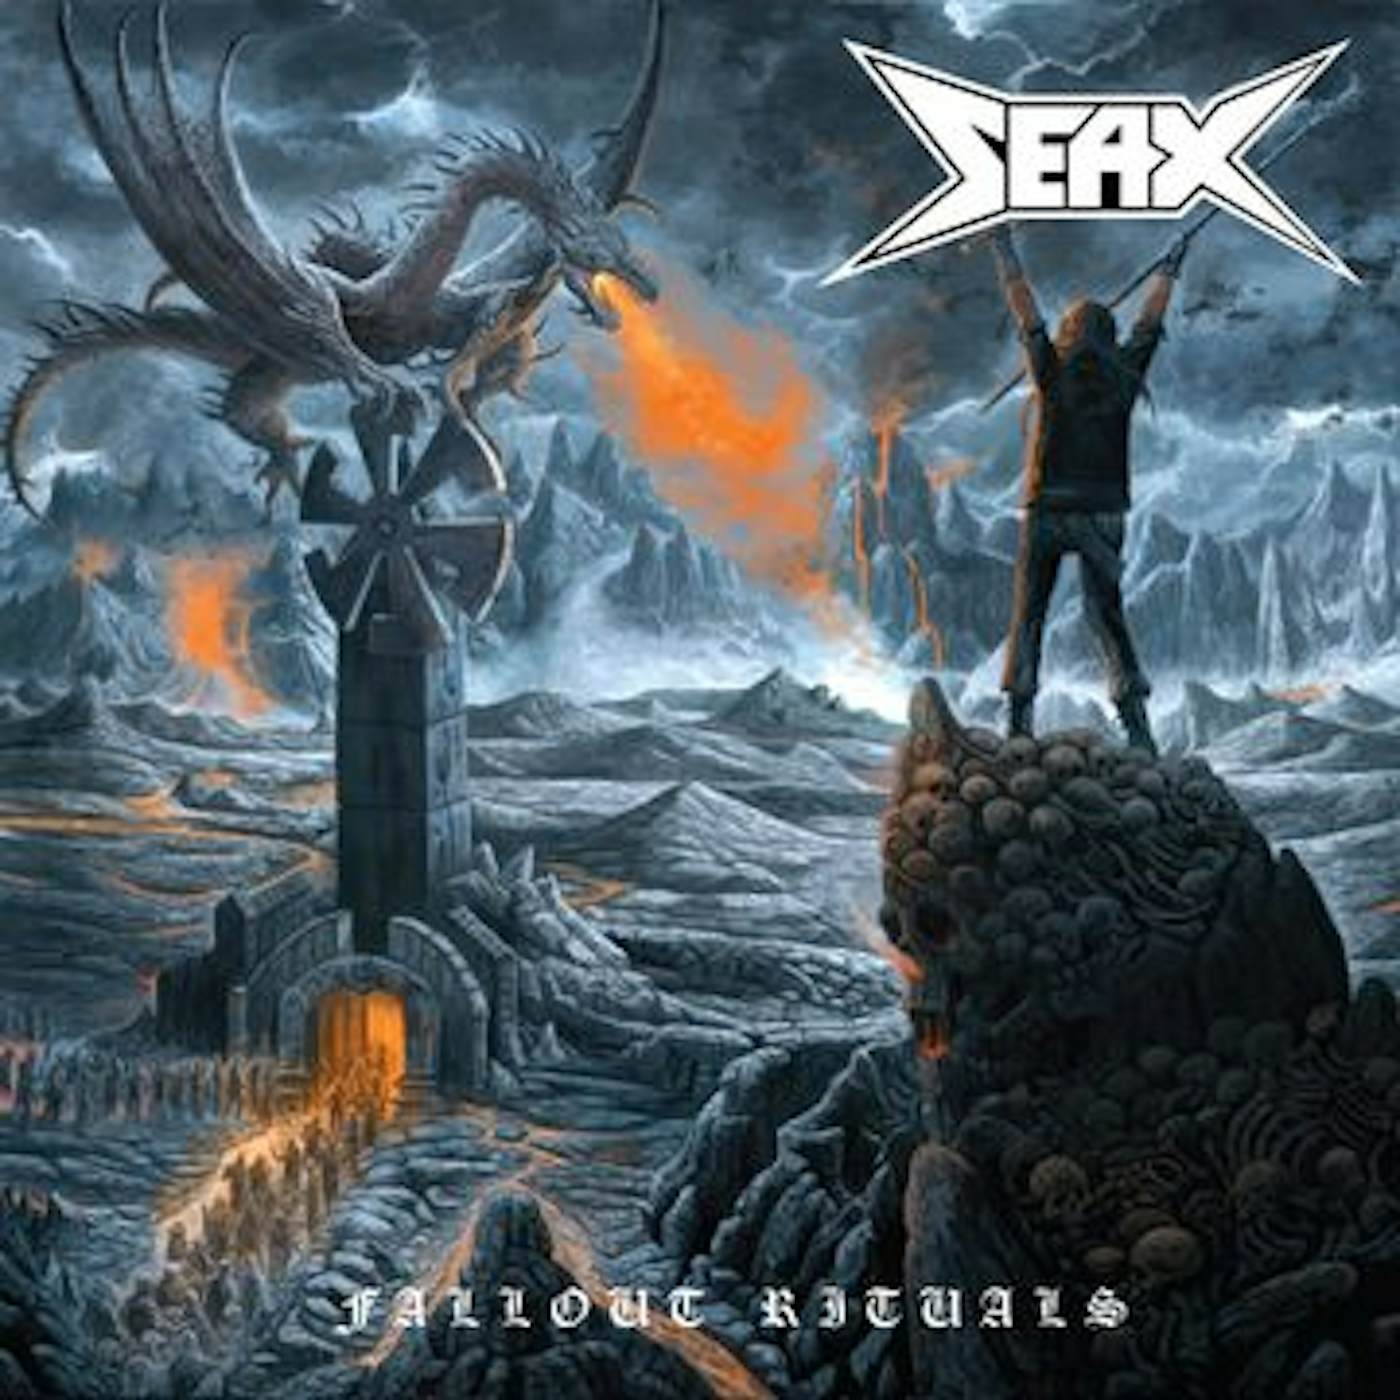 Seax Fallout Rituals Vinyl Record